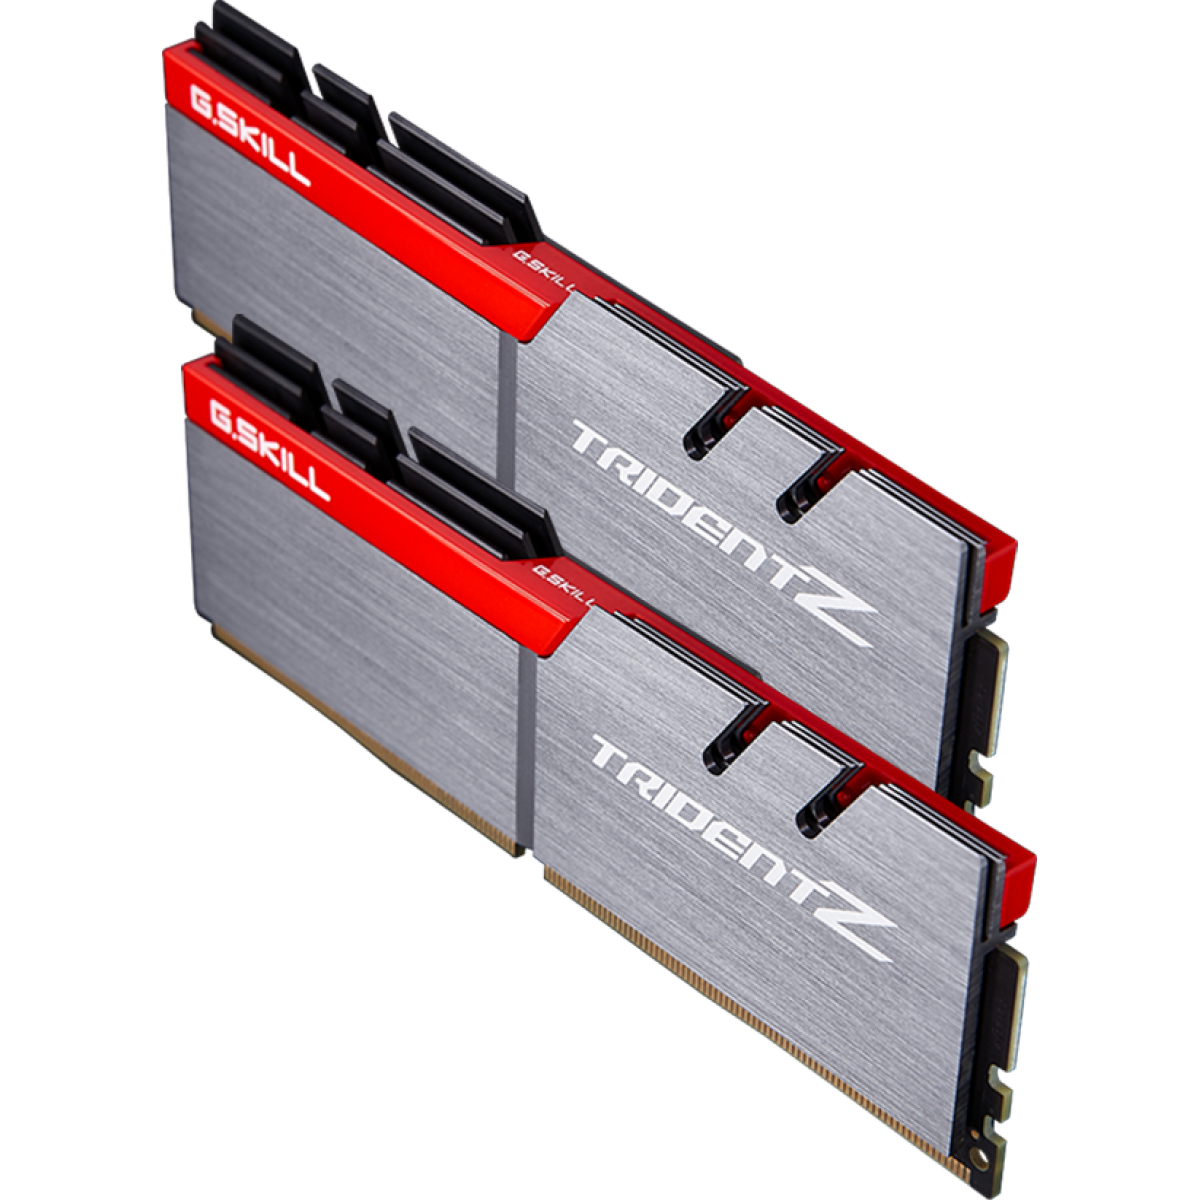 Memória DDR4 G.Skill Trident Z, 8GB (2x4GB) 3200MHz, F4-3200C16D-8GTZB